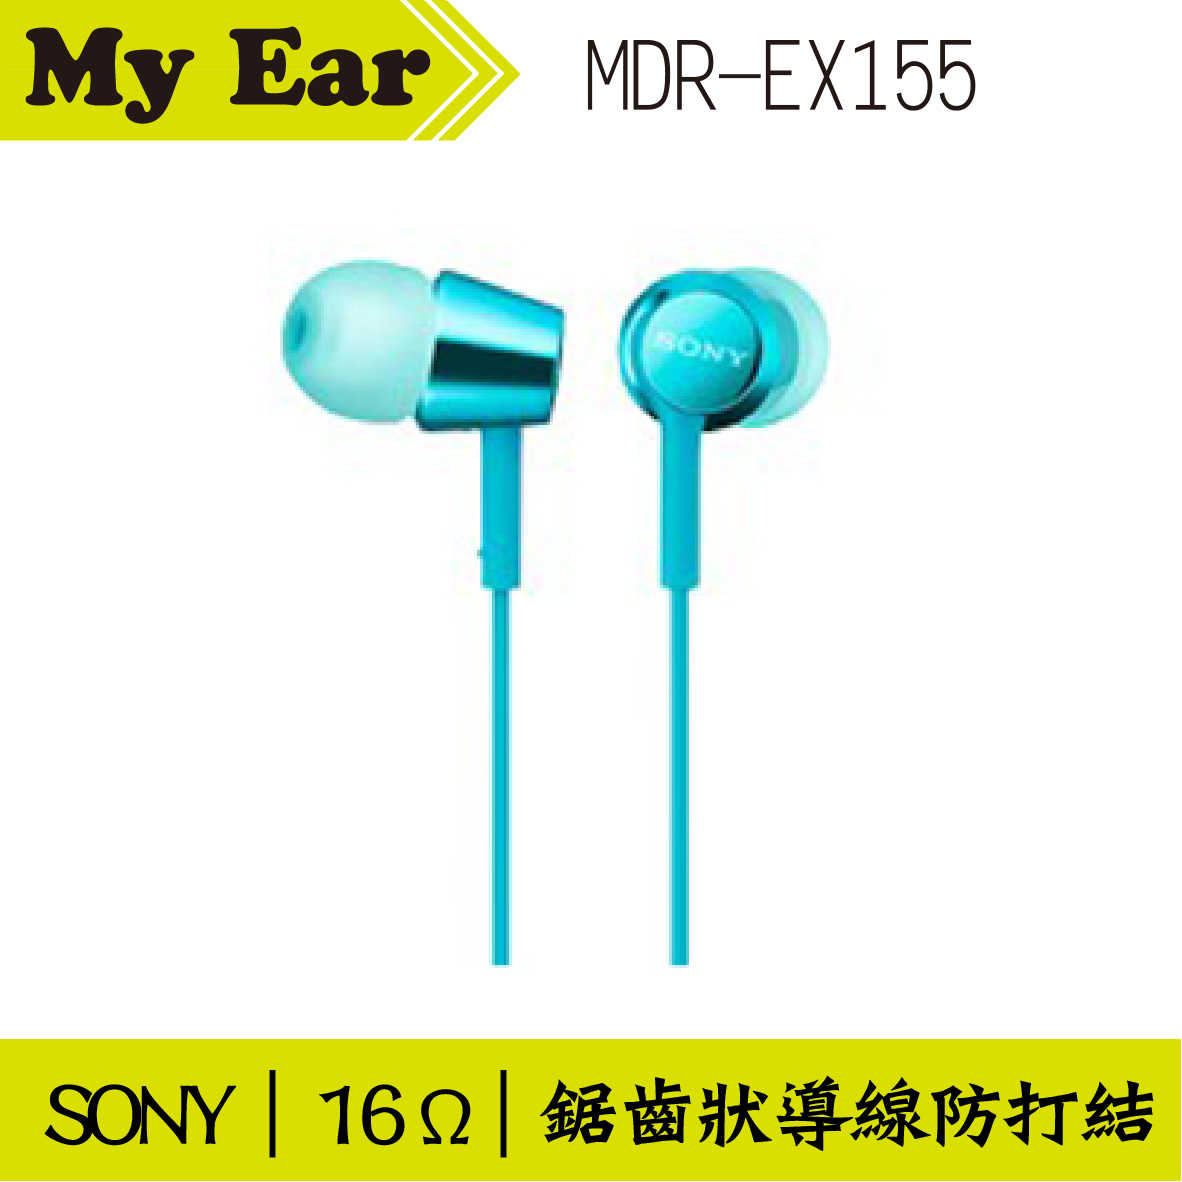 SONY MDR-EX155 入耳式立體聲耳機 藍色  | My Ear 耳機專門店